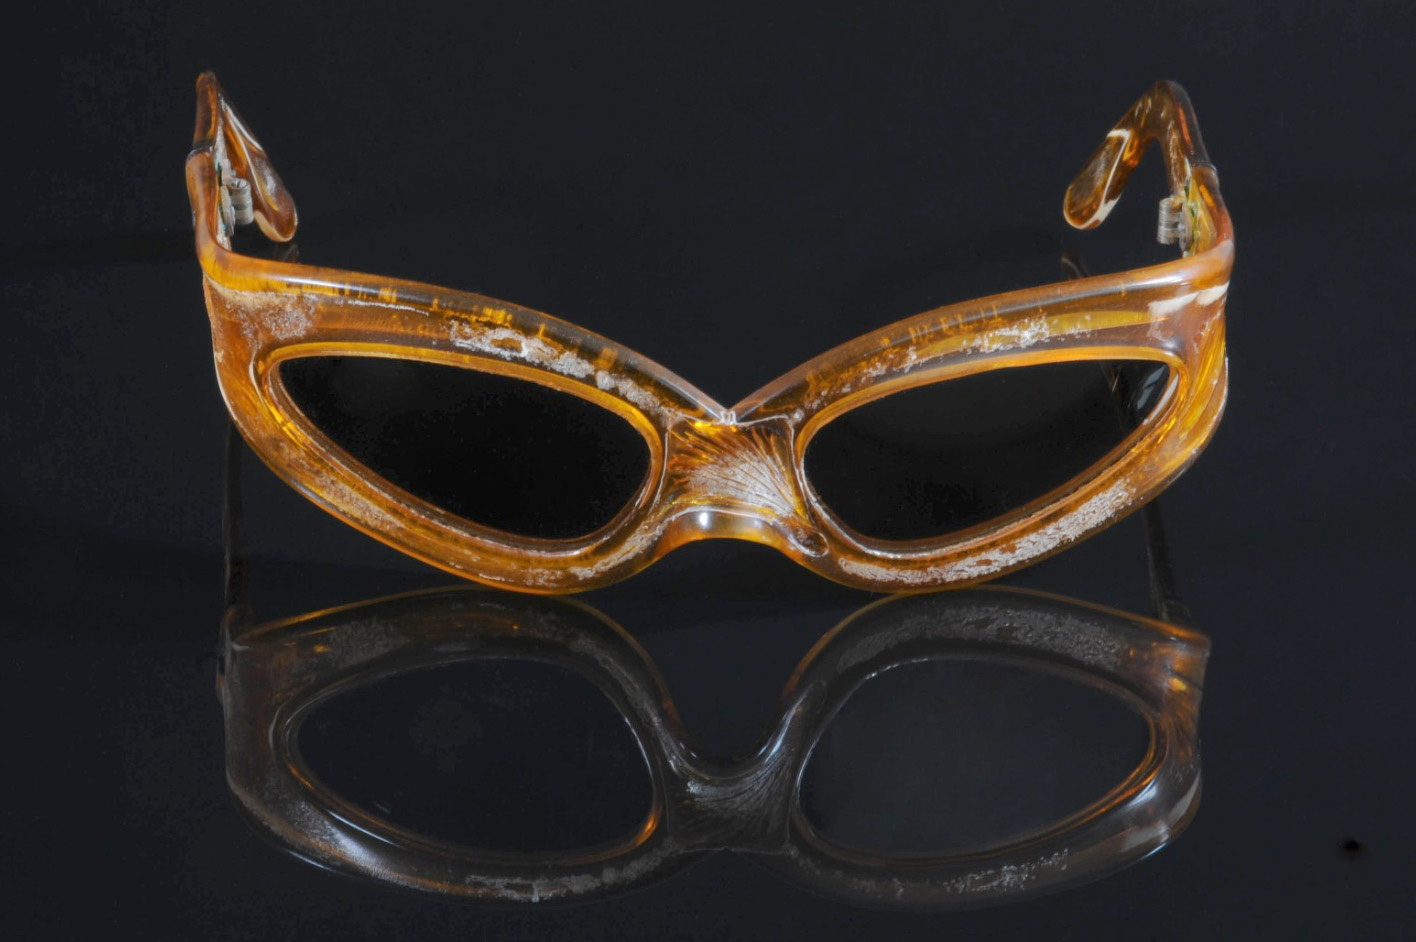 1 197 € Pierre Marly, paire de lunettes de soleil de forme allongée en acétate translucide teinté orange portées sur scène par Johnny, altérations due